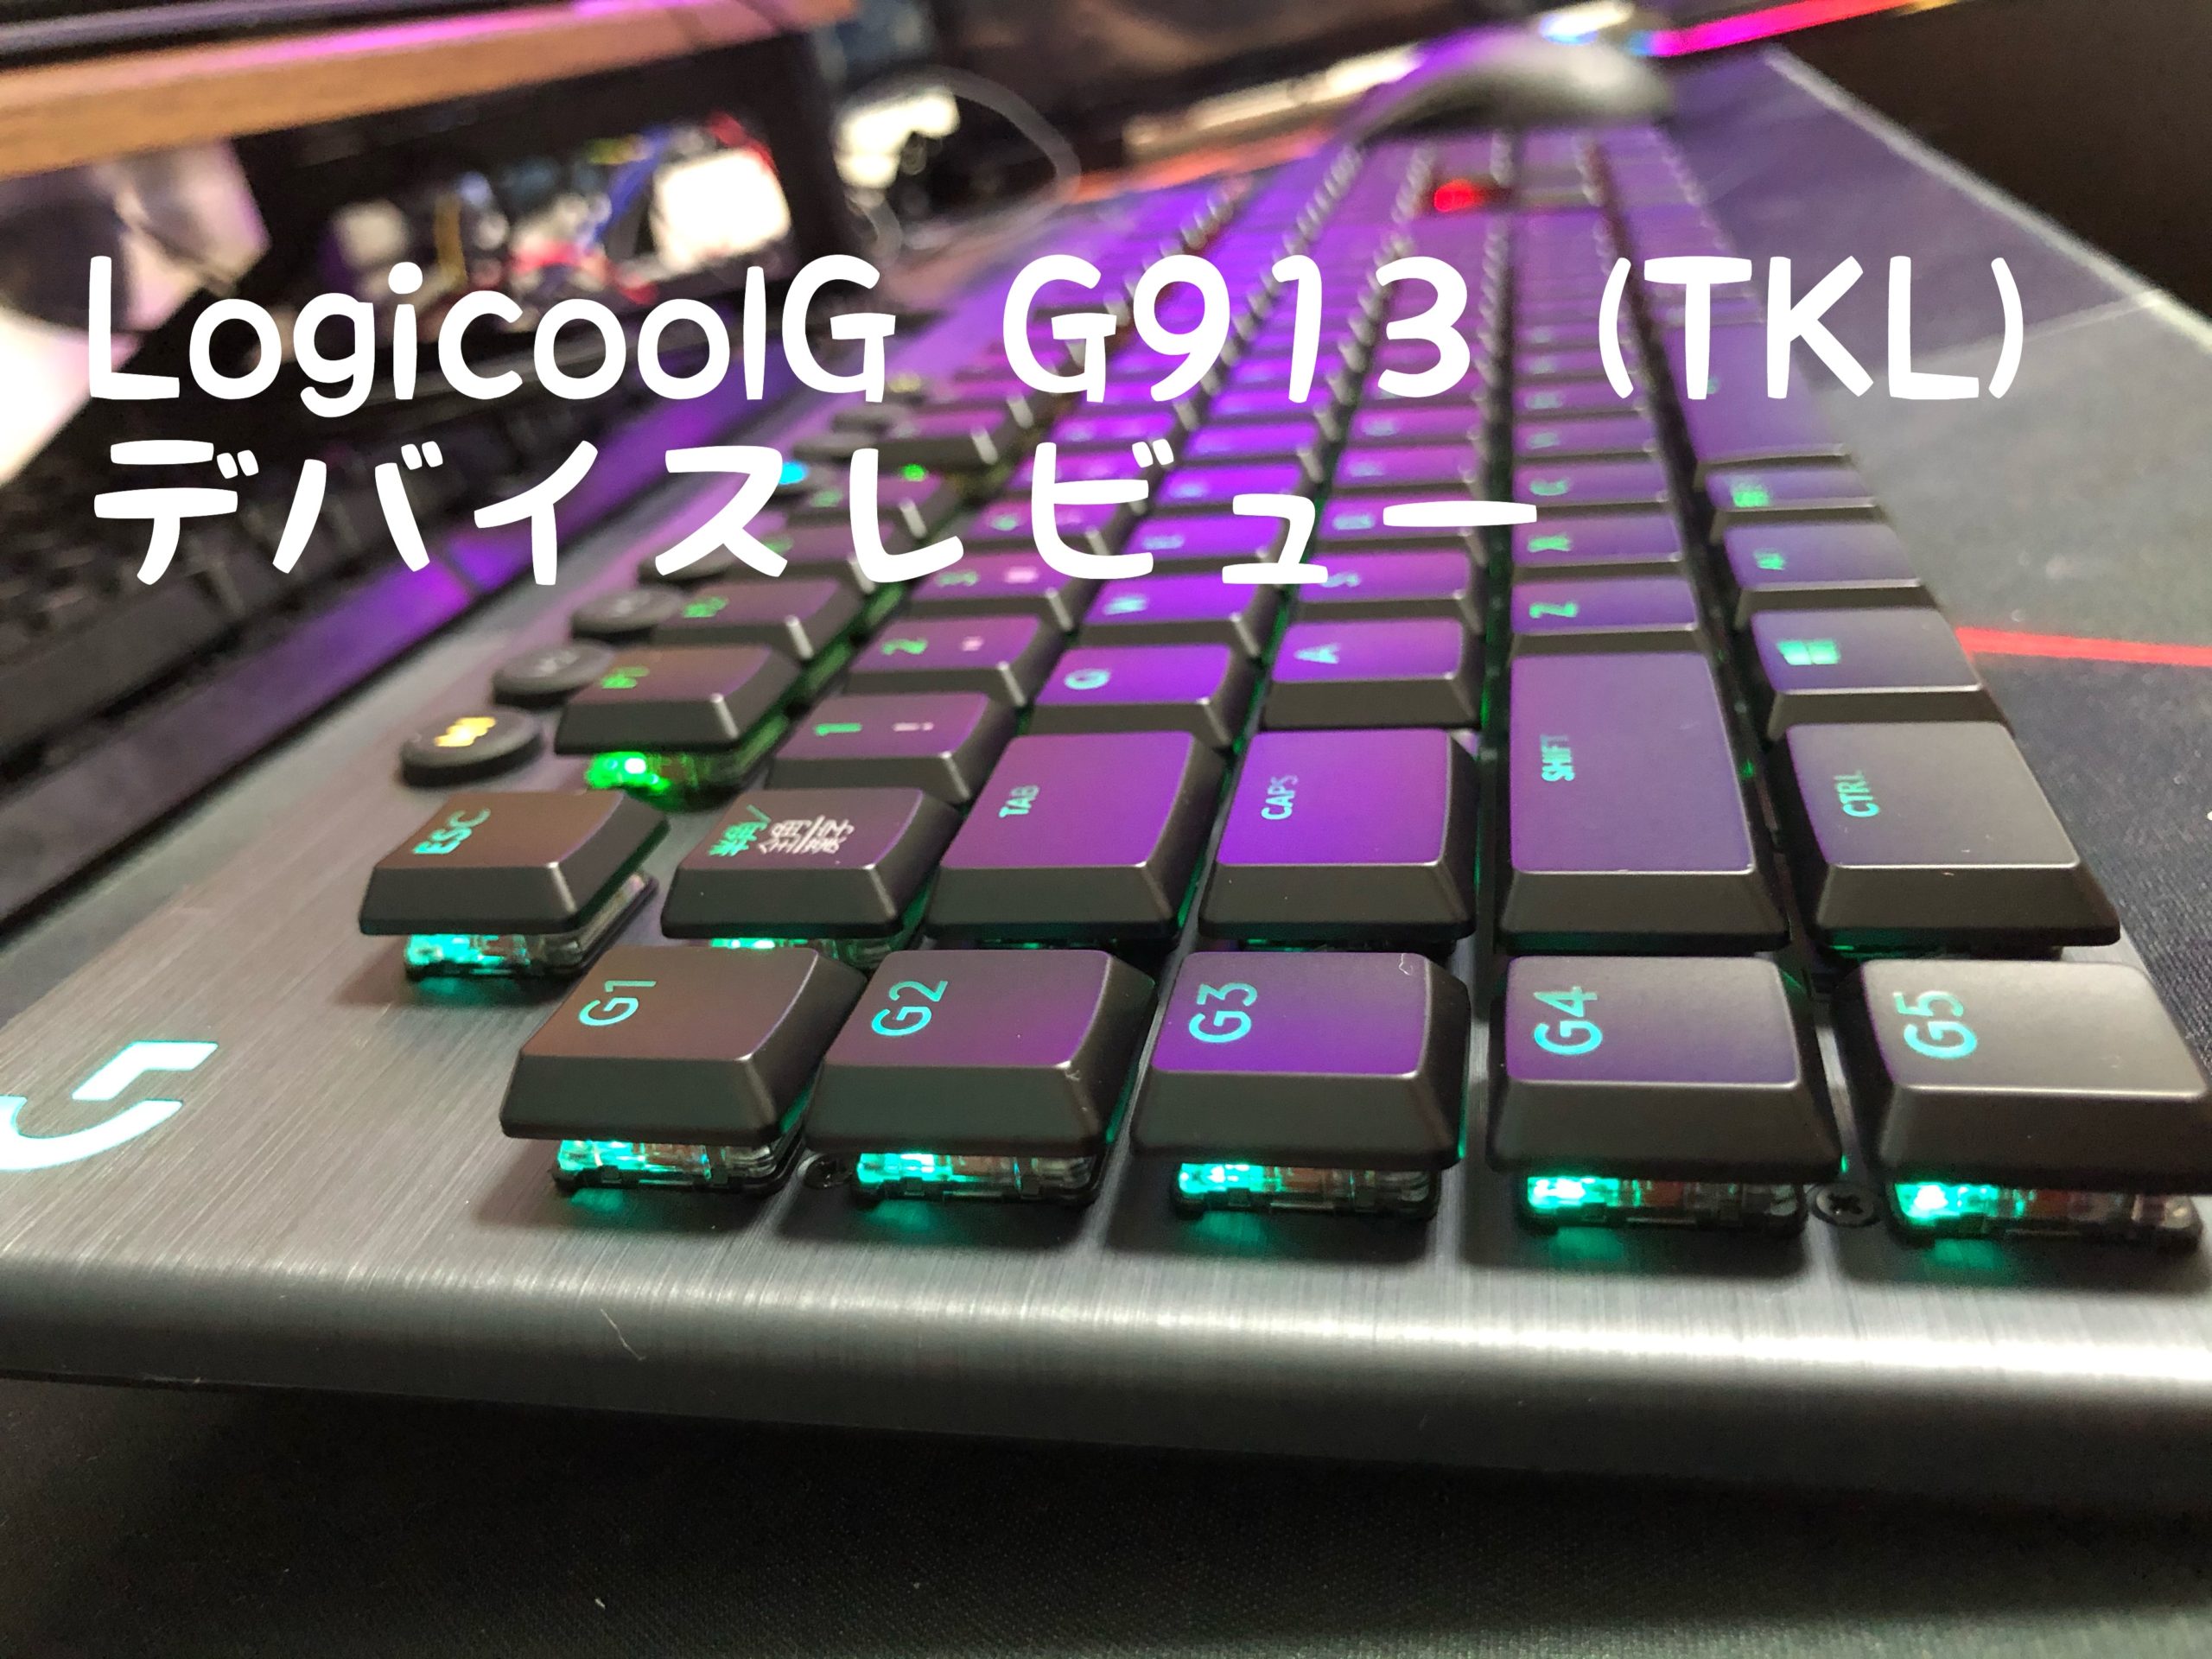 【デバイスレビュー】LogicoolG G913 (TKL)【低遅延ワイヤレスの薄型キーボード】